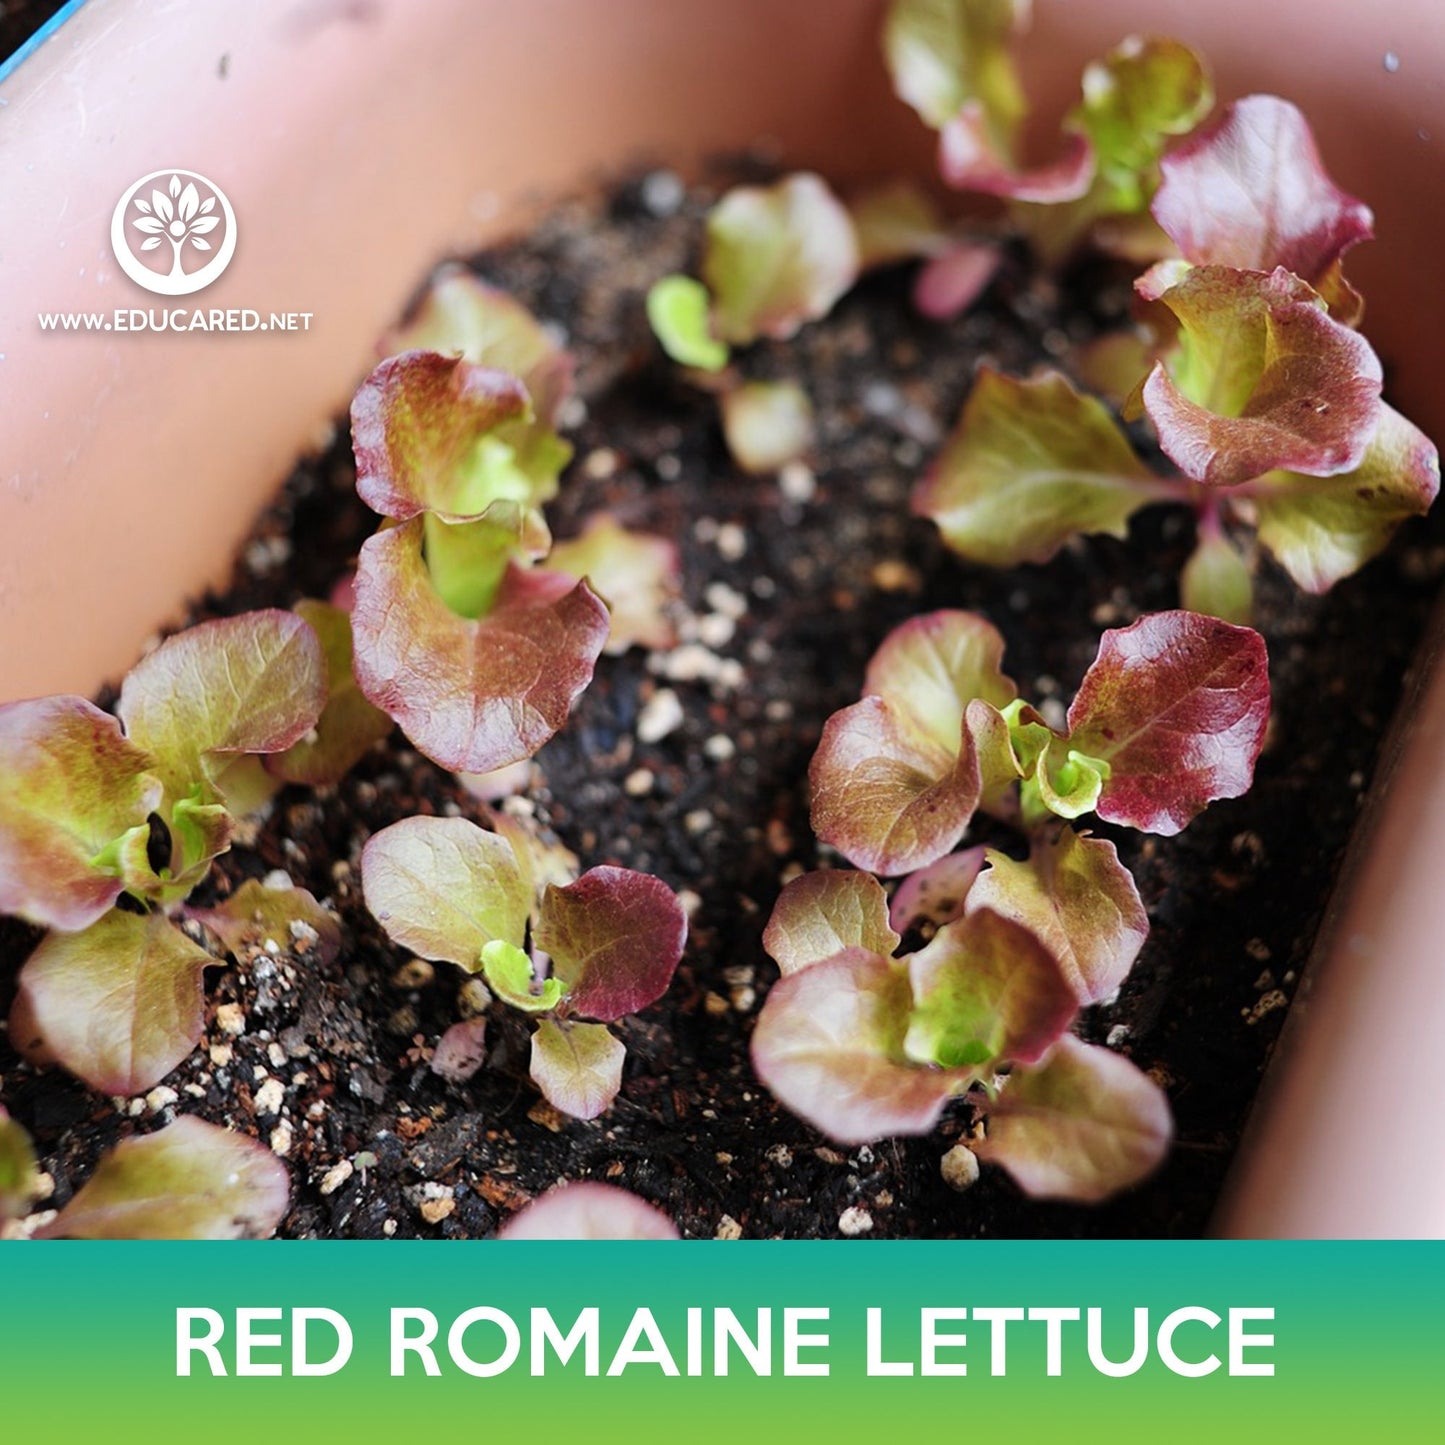 Red Romaine Lettuce Seeds, Lactuca sativa